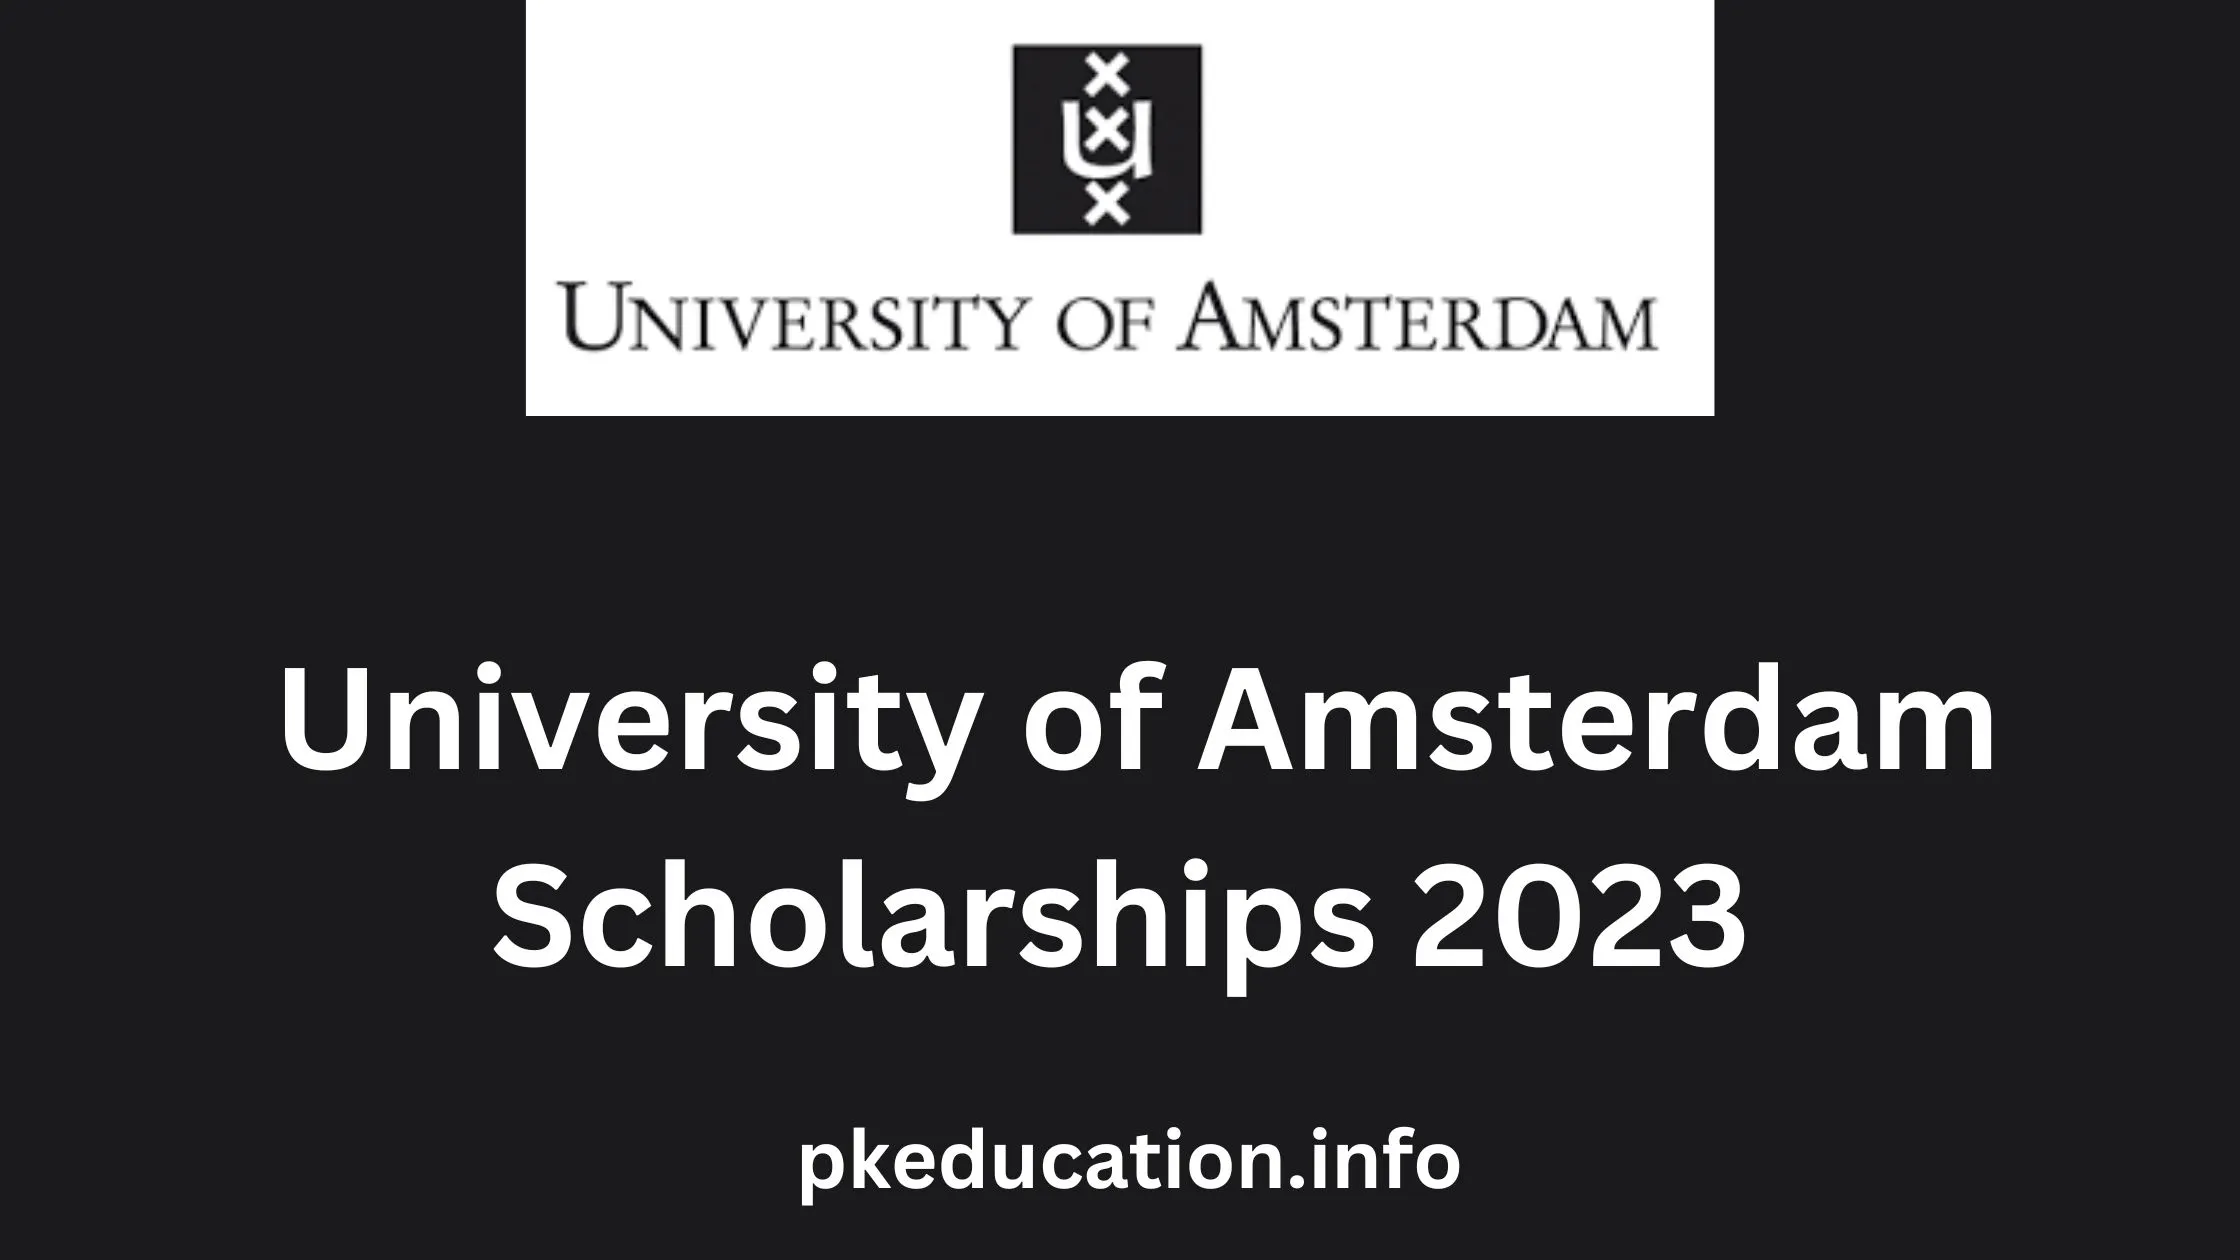 University of Amsterdam Scholarships 2023